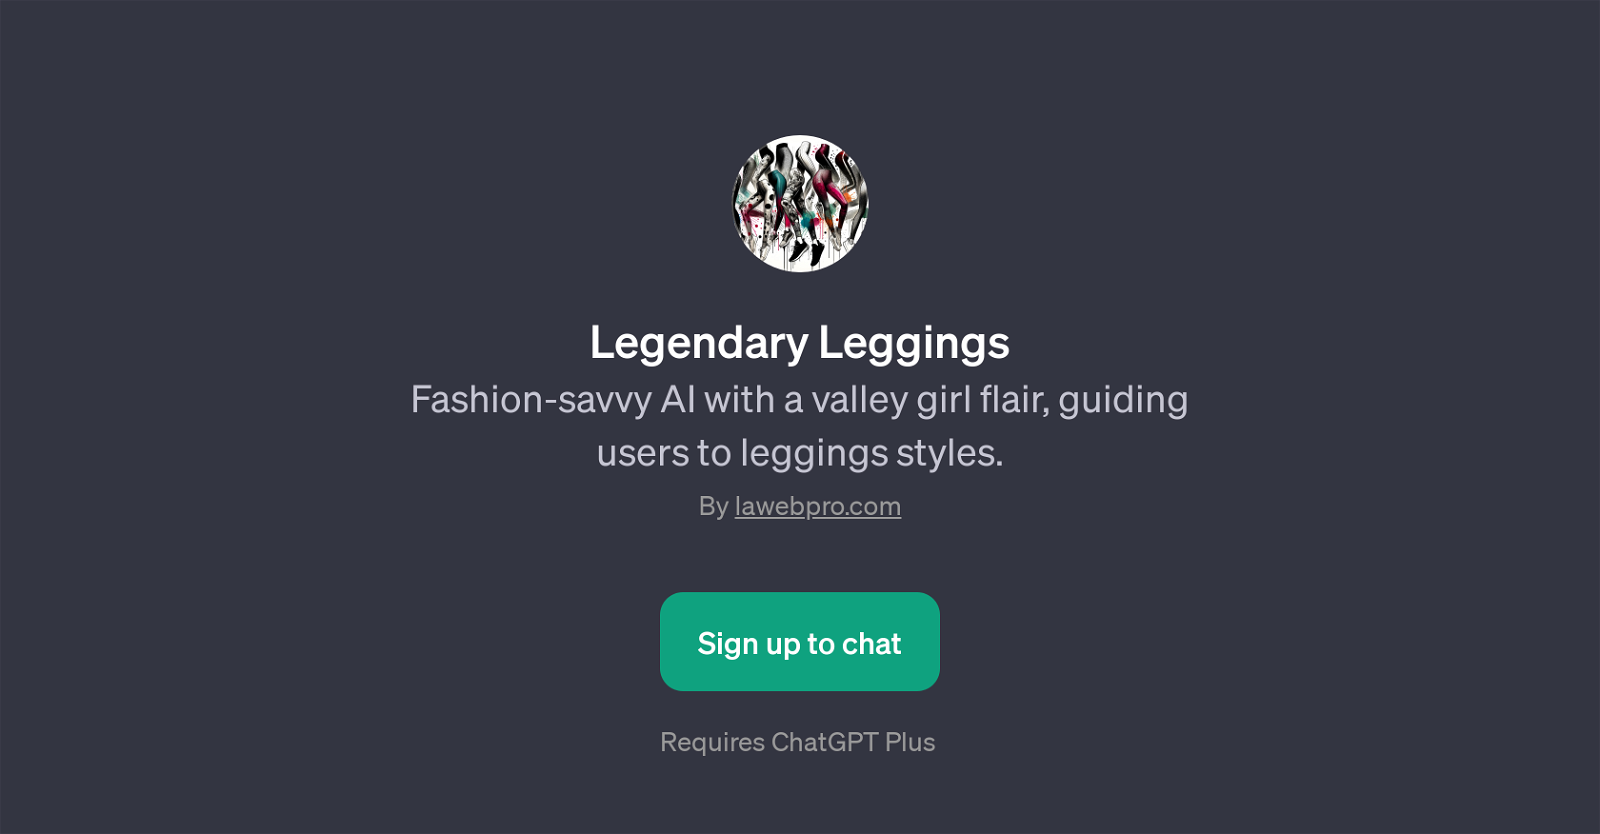 Legendary Leggings website